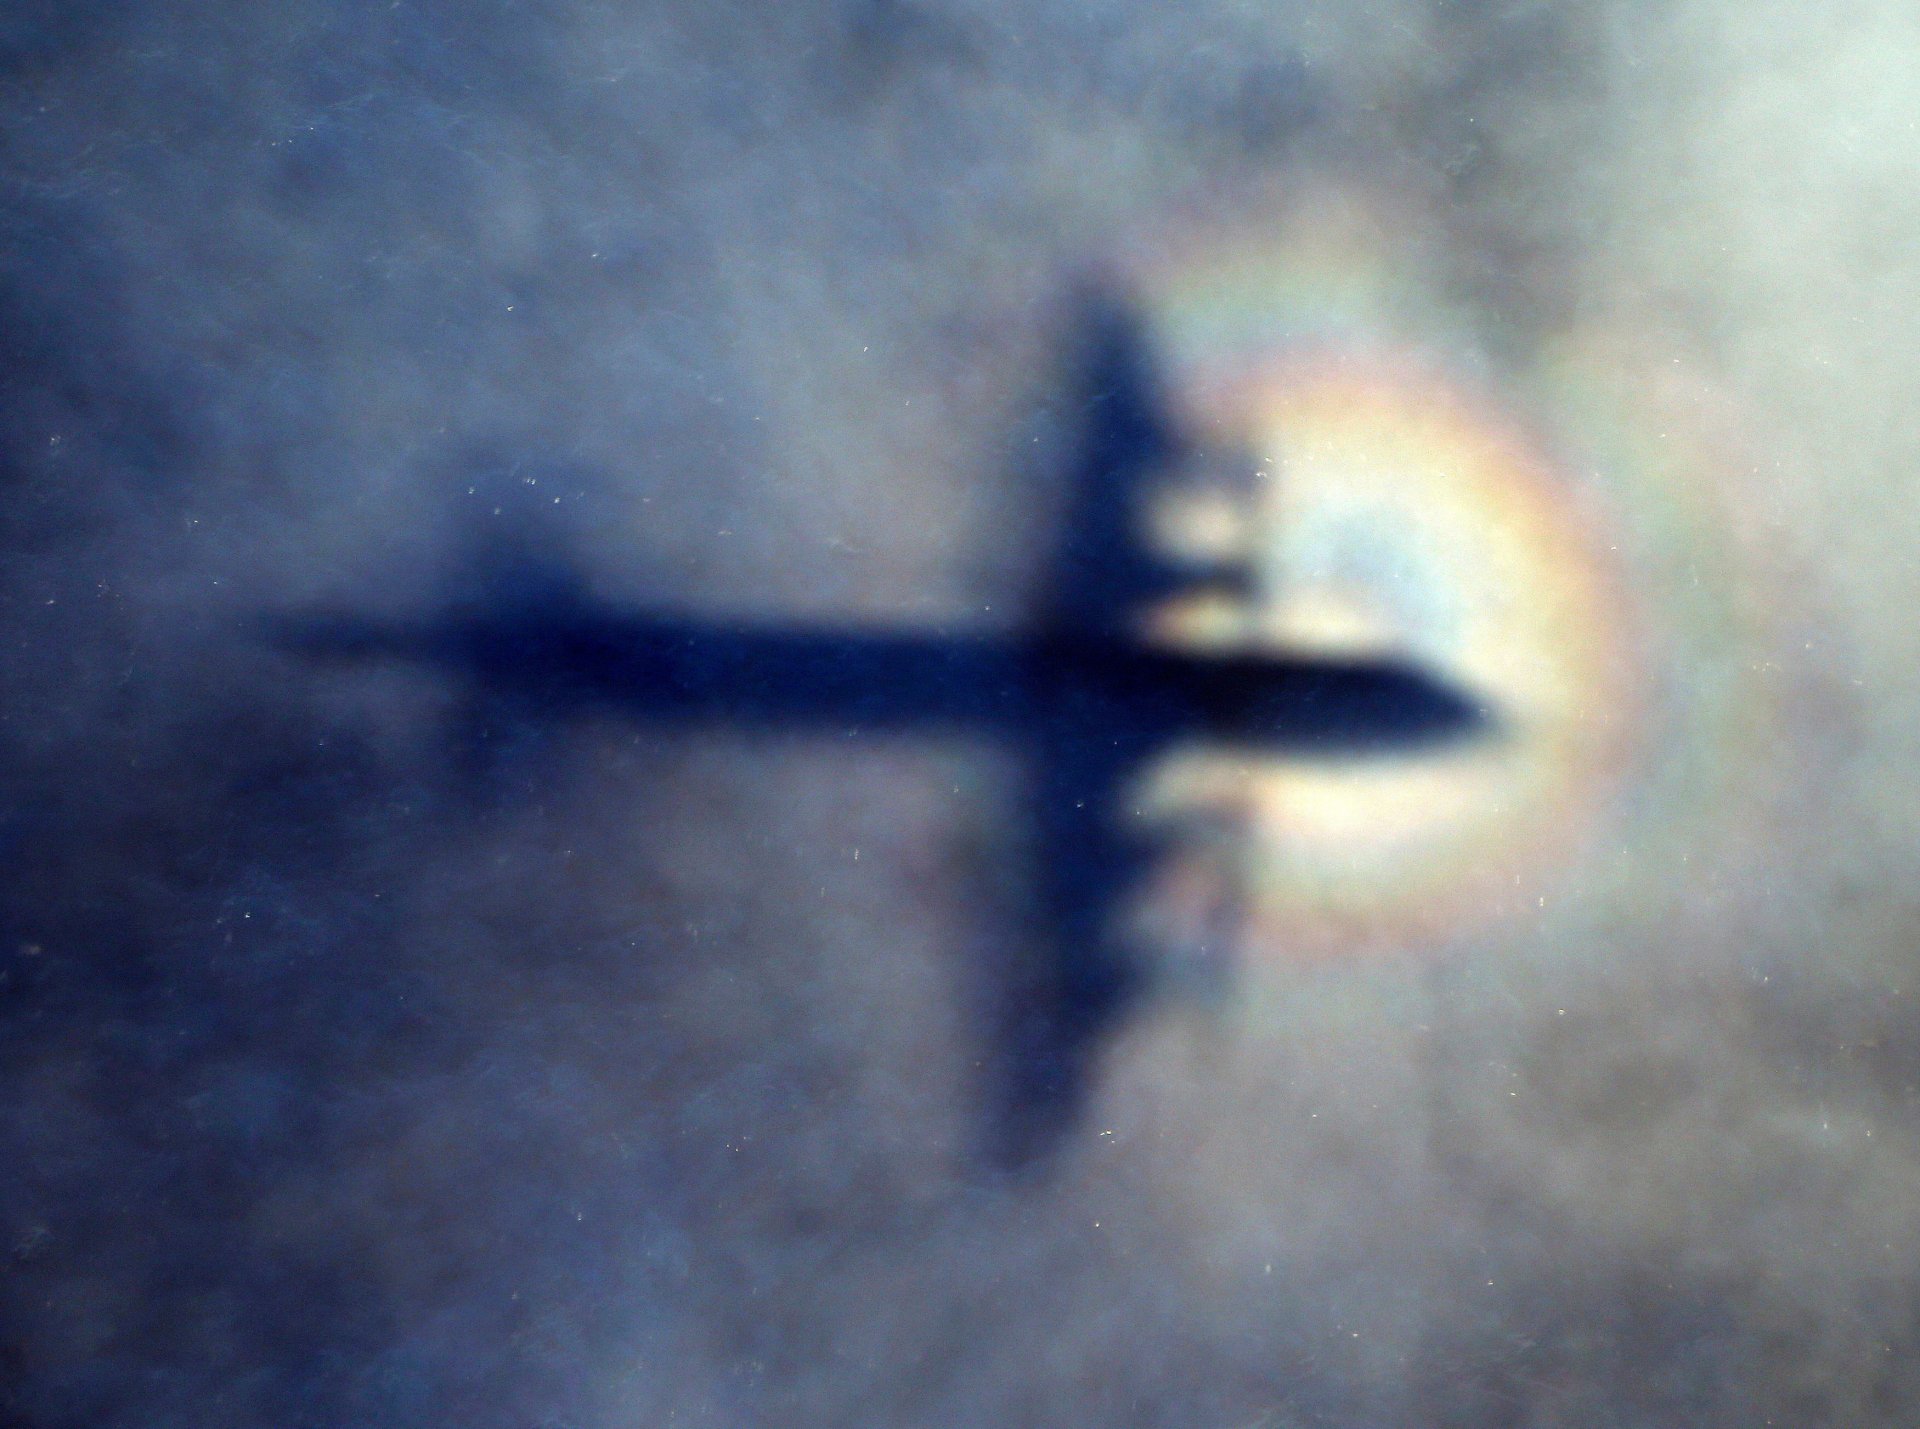 Сянката на самолет на Кралските военновъздушни сили на Нова Зеландия в нисък облак, докато търси изчезналия полет MH370 на Malaysia Airlines в южната част на Индийския океан, близо до бреговете на Западна Австралия Сянката на самолет на Кралските военновъздушни сили на Нова Зеландия в нисък облак, докато търси изчезналия полет MH370 на Malaysia Airlines в южната част на Индийския океан, близо до бреговете на Западна Австралия